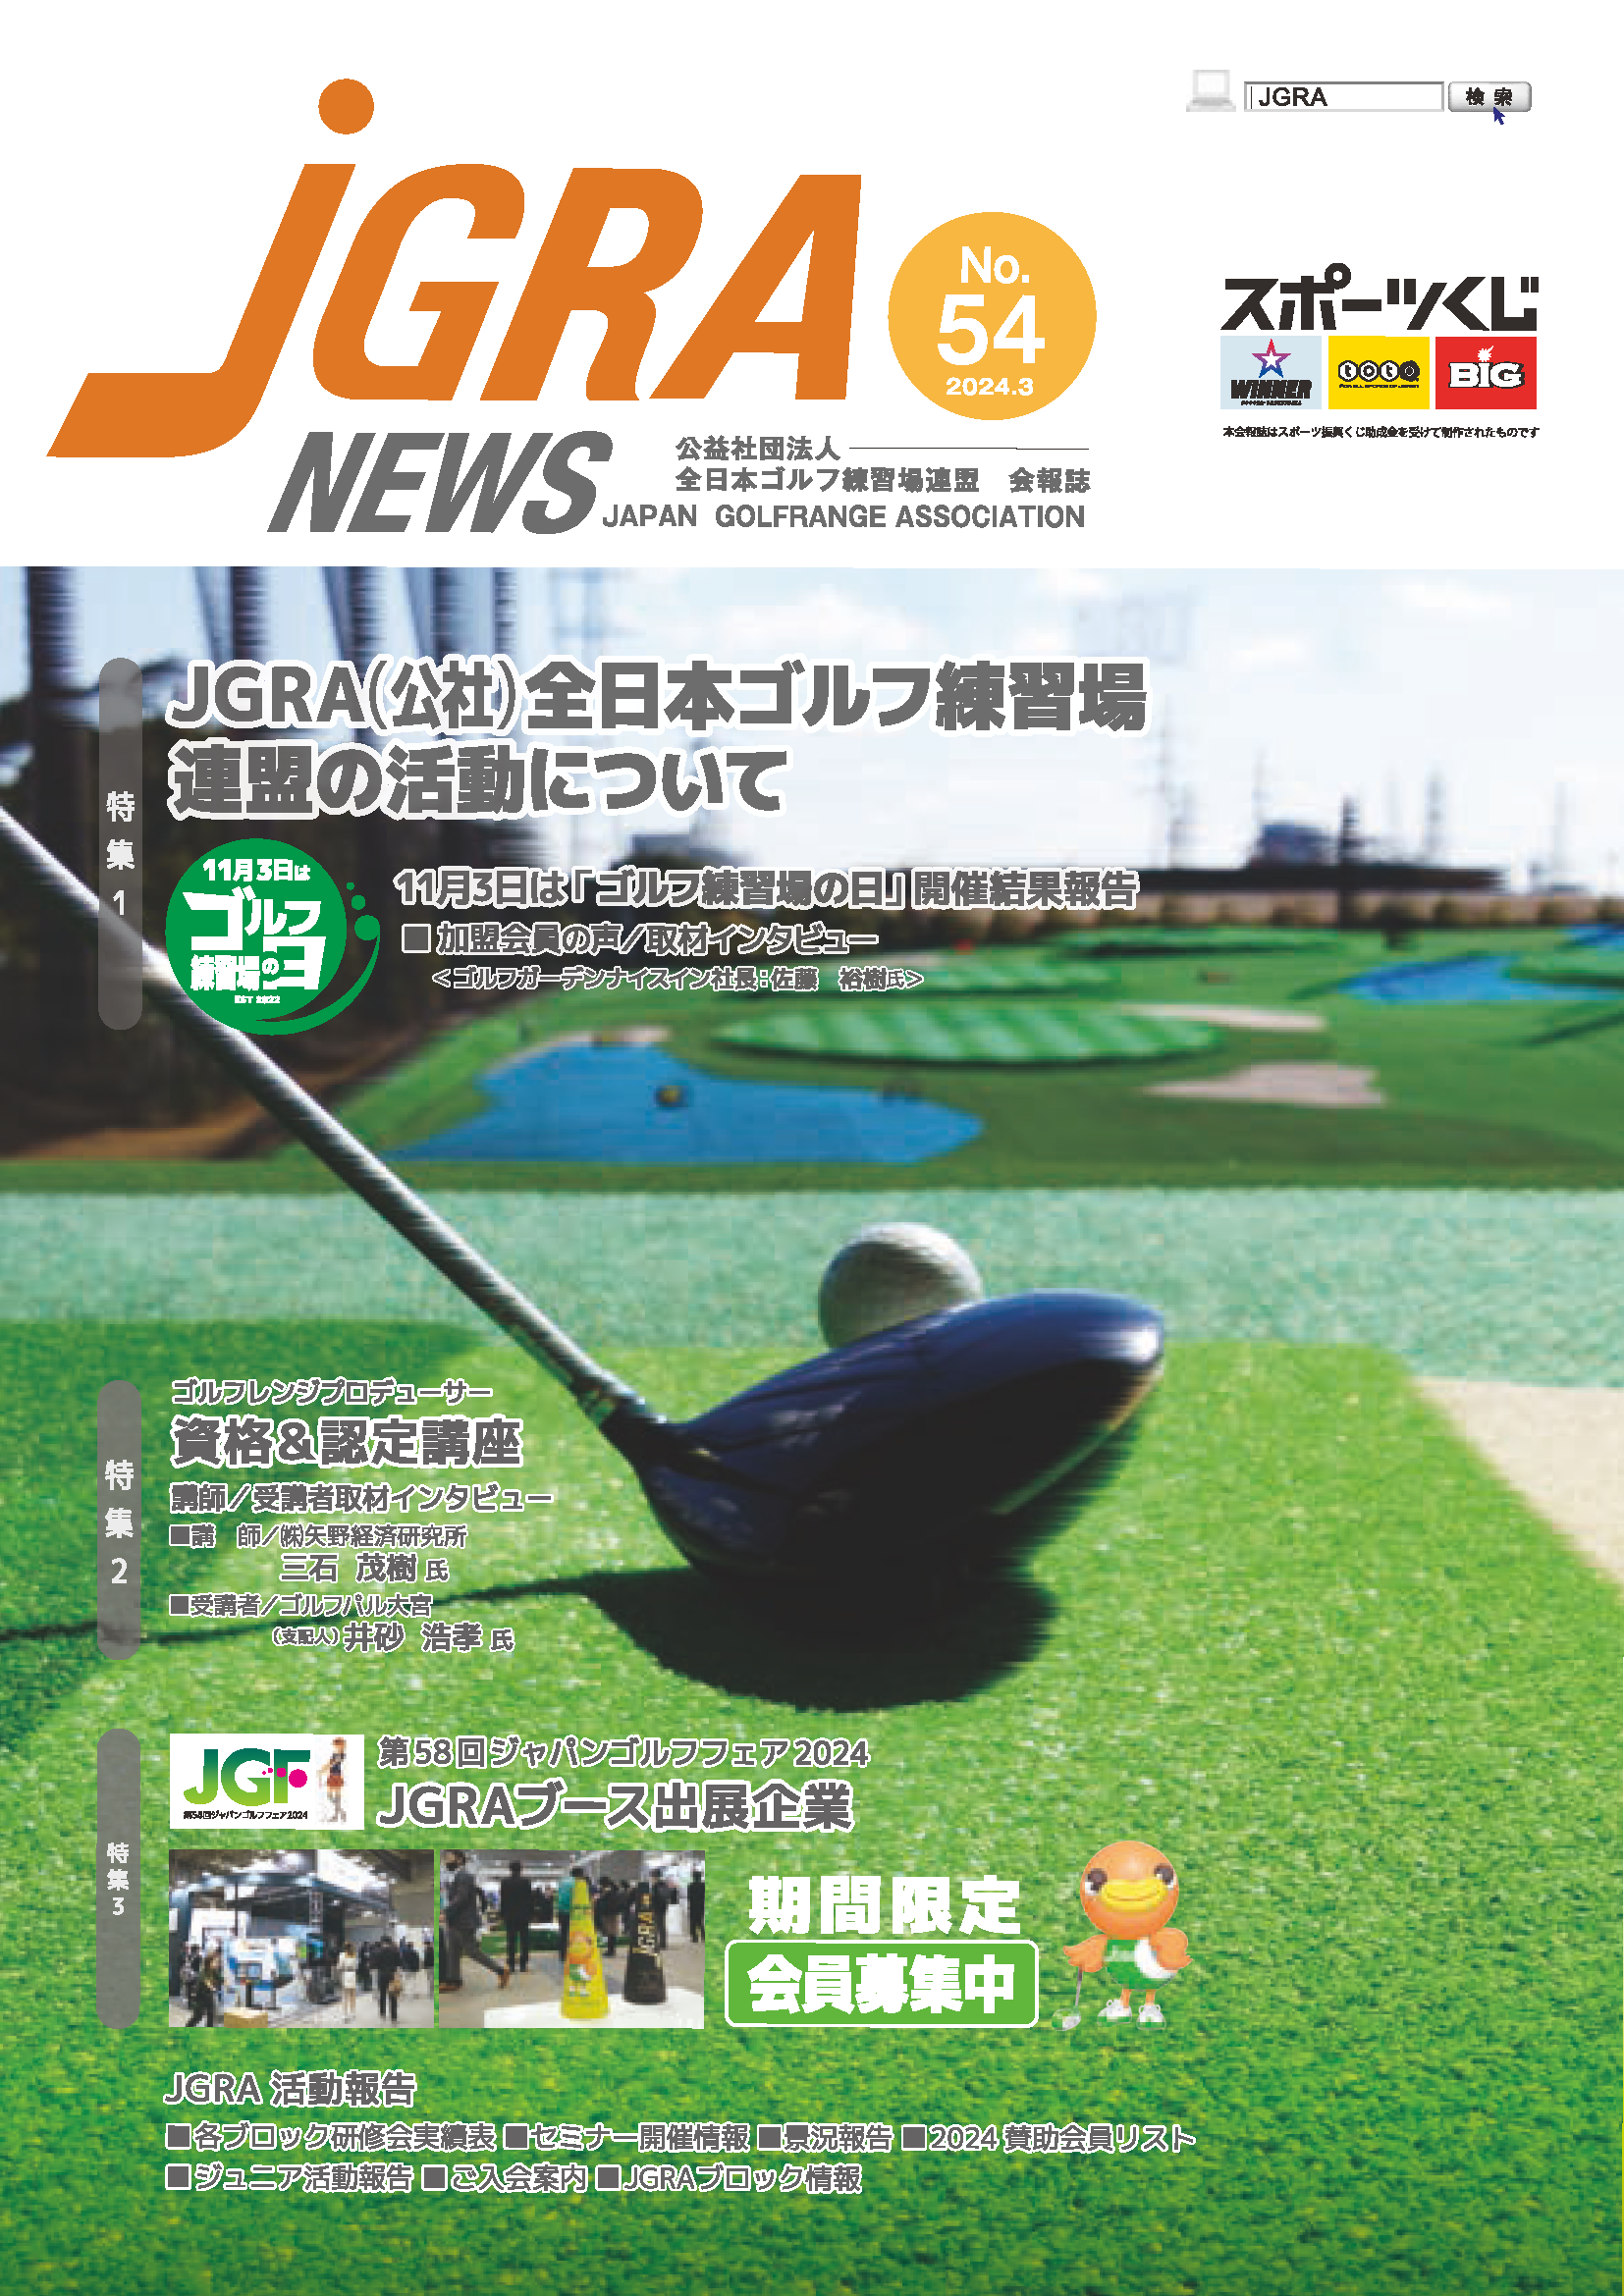 JGRA NEWS No.54